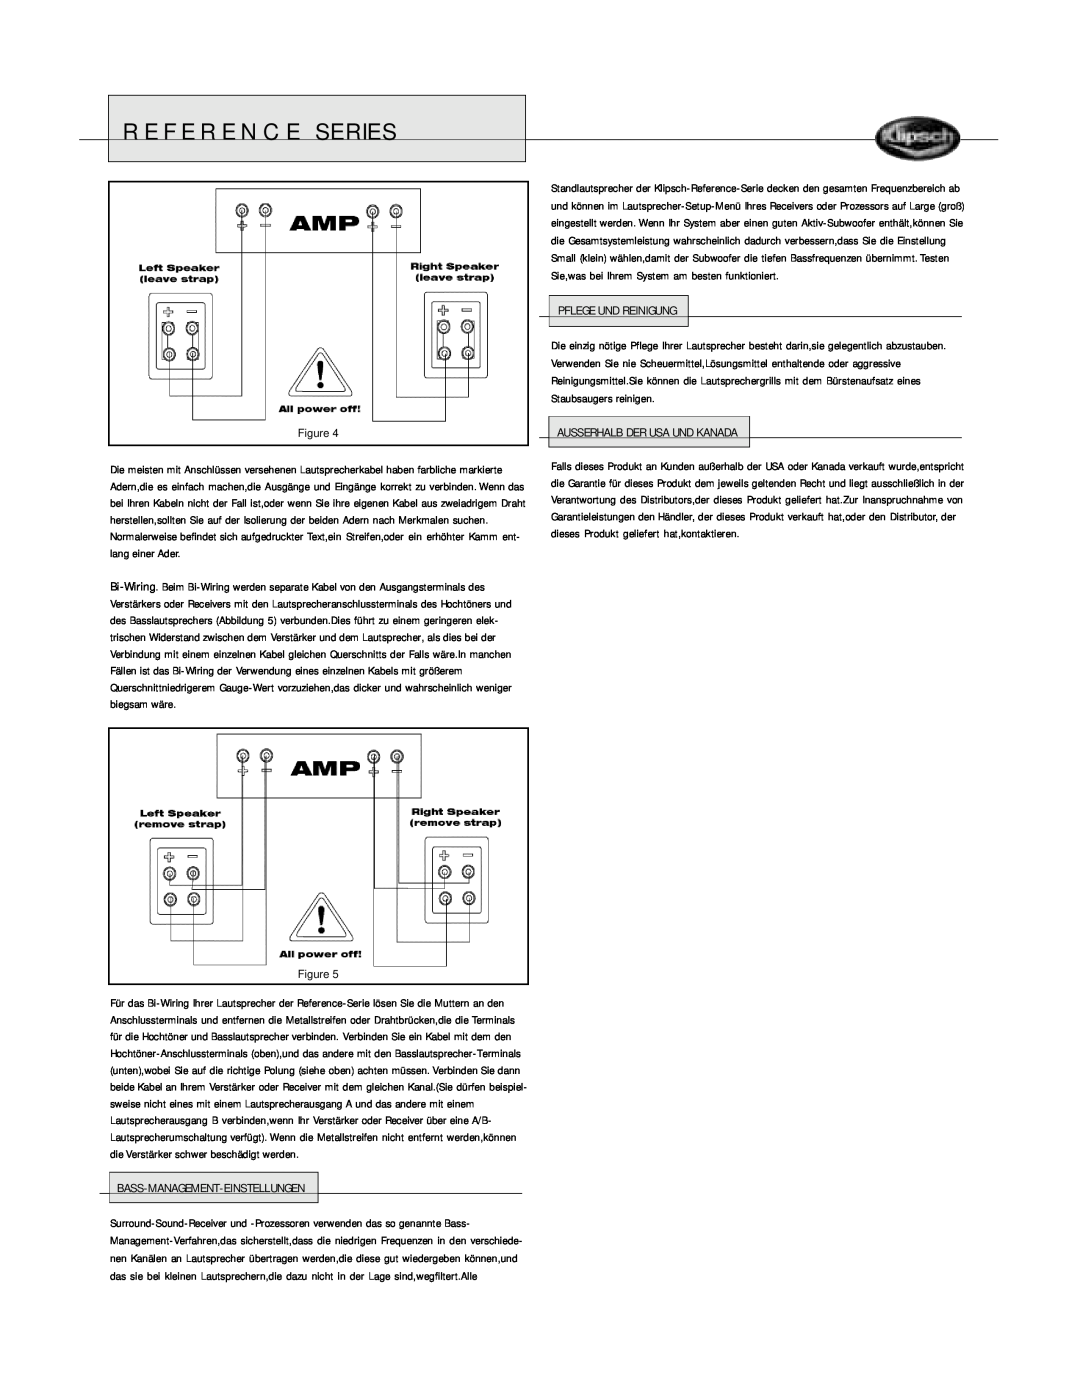 Klipsch Floorstanding Speaker Reference Series, Pflege Und Reinigung, Staubsaugers reinigen, Bass-Management-Einstellungen 